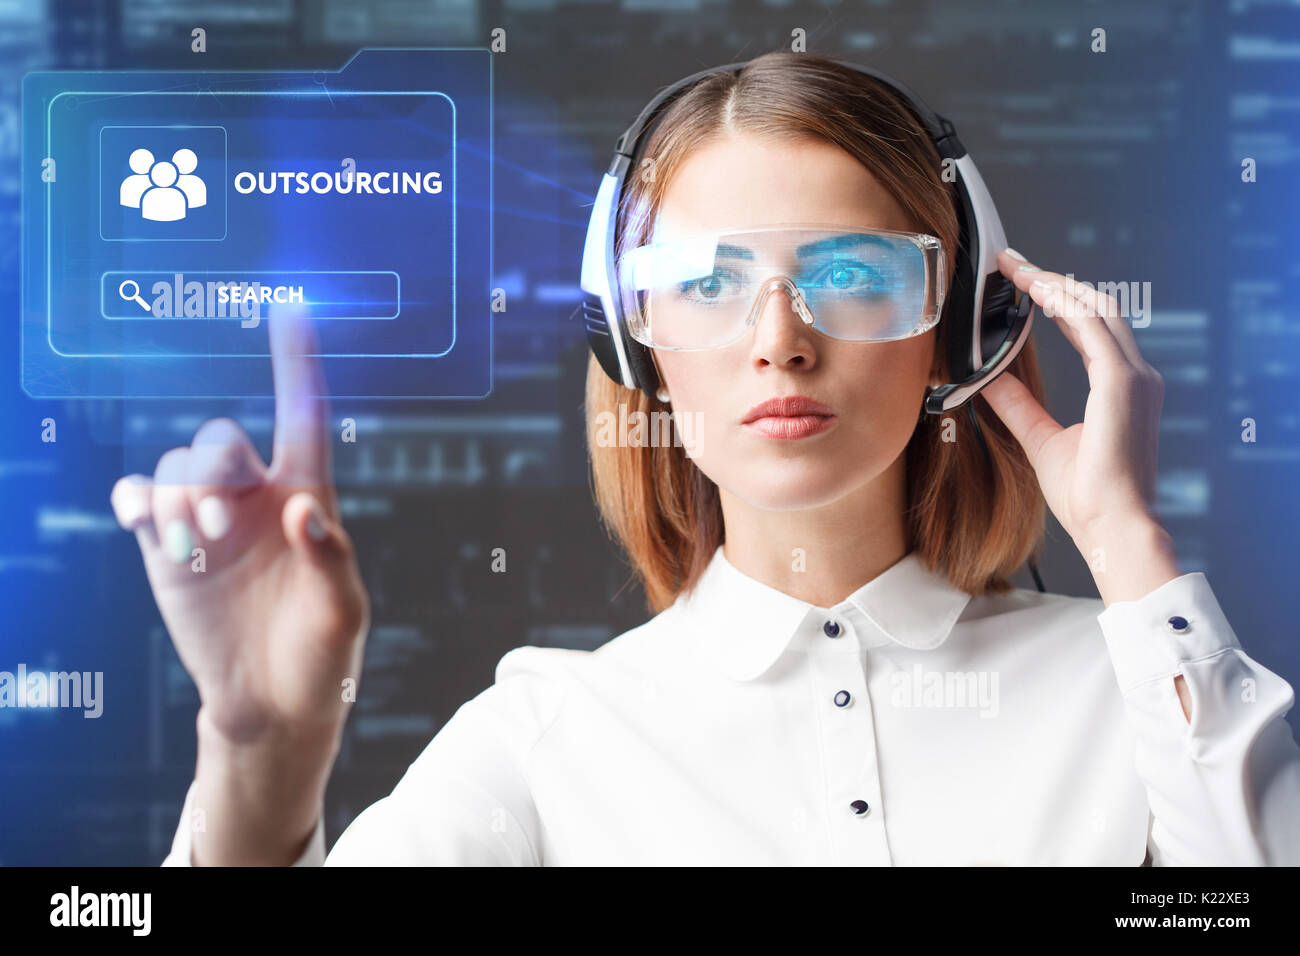 Junge Geschäftsfrau arbeiten in virtuellen Gläser, wählen Sie das Symbol Outsourcing auf die virtuelle Darstellung. Stockfoto